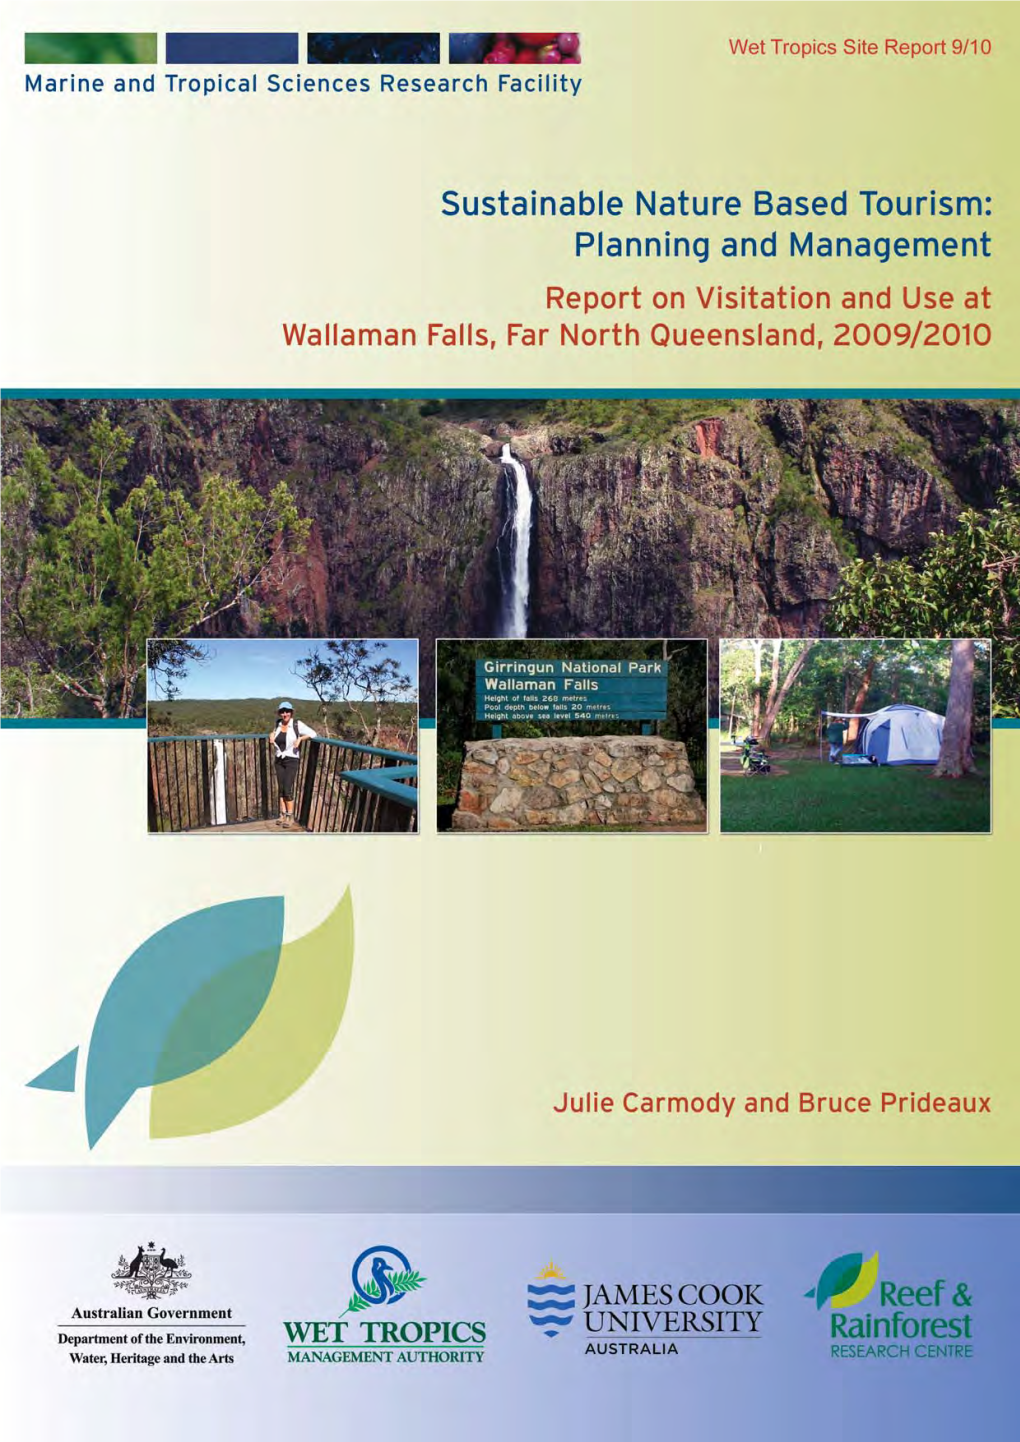 Report on Visitation and Use at Wallaman Falls, Far North Queensland, 2009/2010